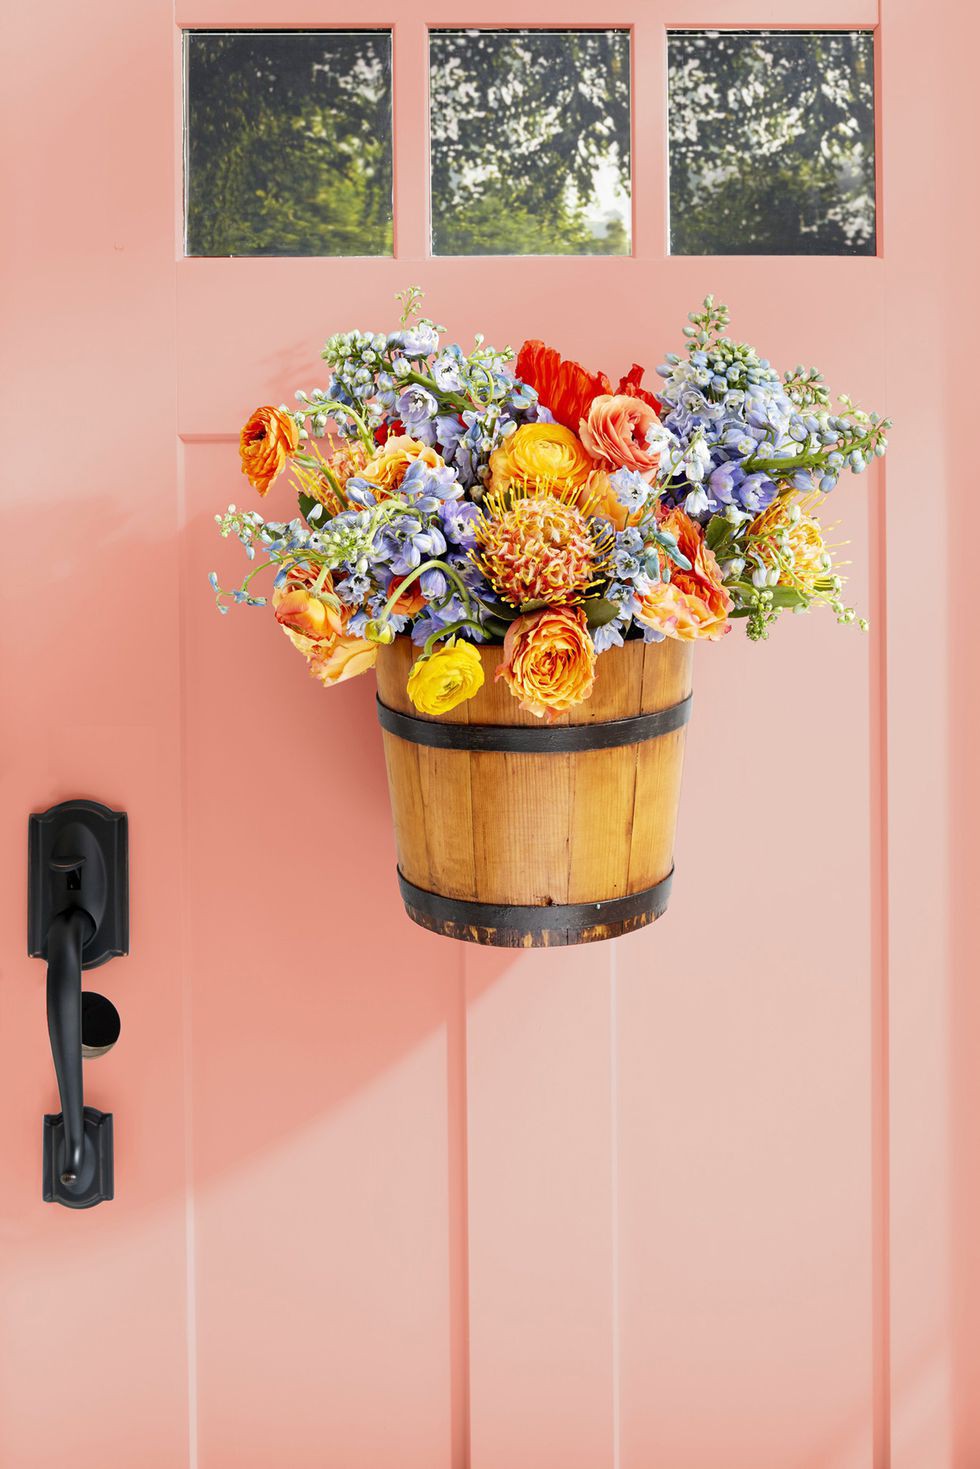 9 cách tận dụng đồ cũ làm hoa treo vừa xinh đẹp vừa tiết kiệm để trang trí trước cửa nhà   - Ảnh 4.